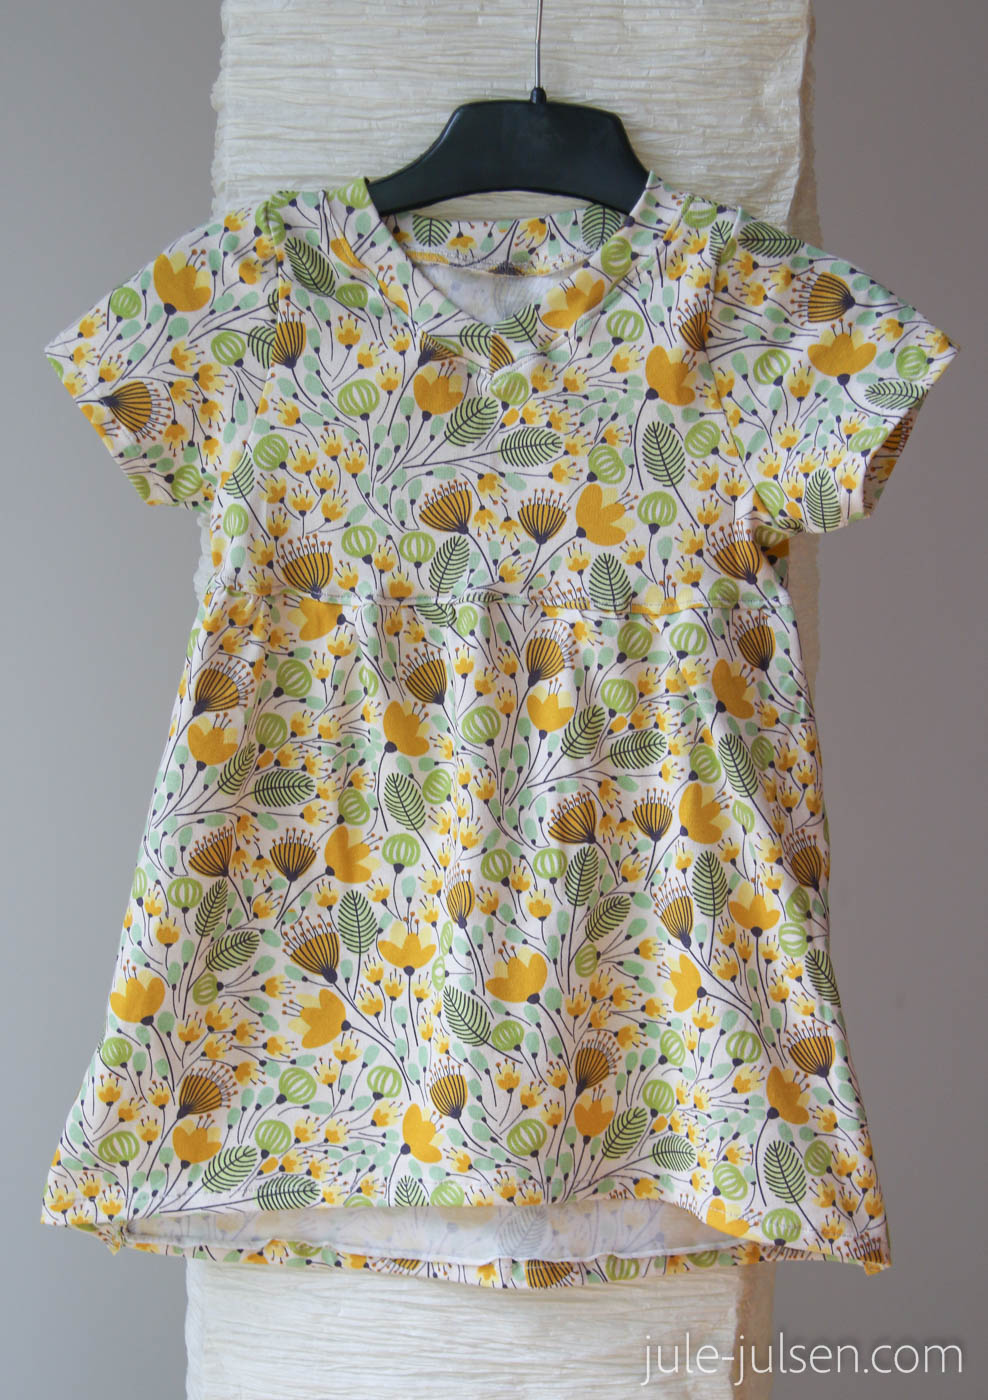 Sommerkleid für Maedchen, Gr. 86, Jersey mit gelben Blumen